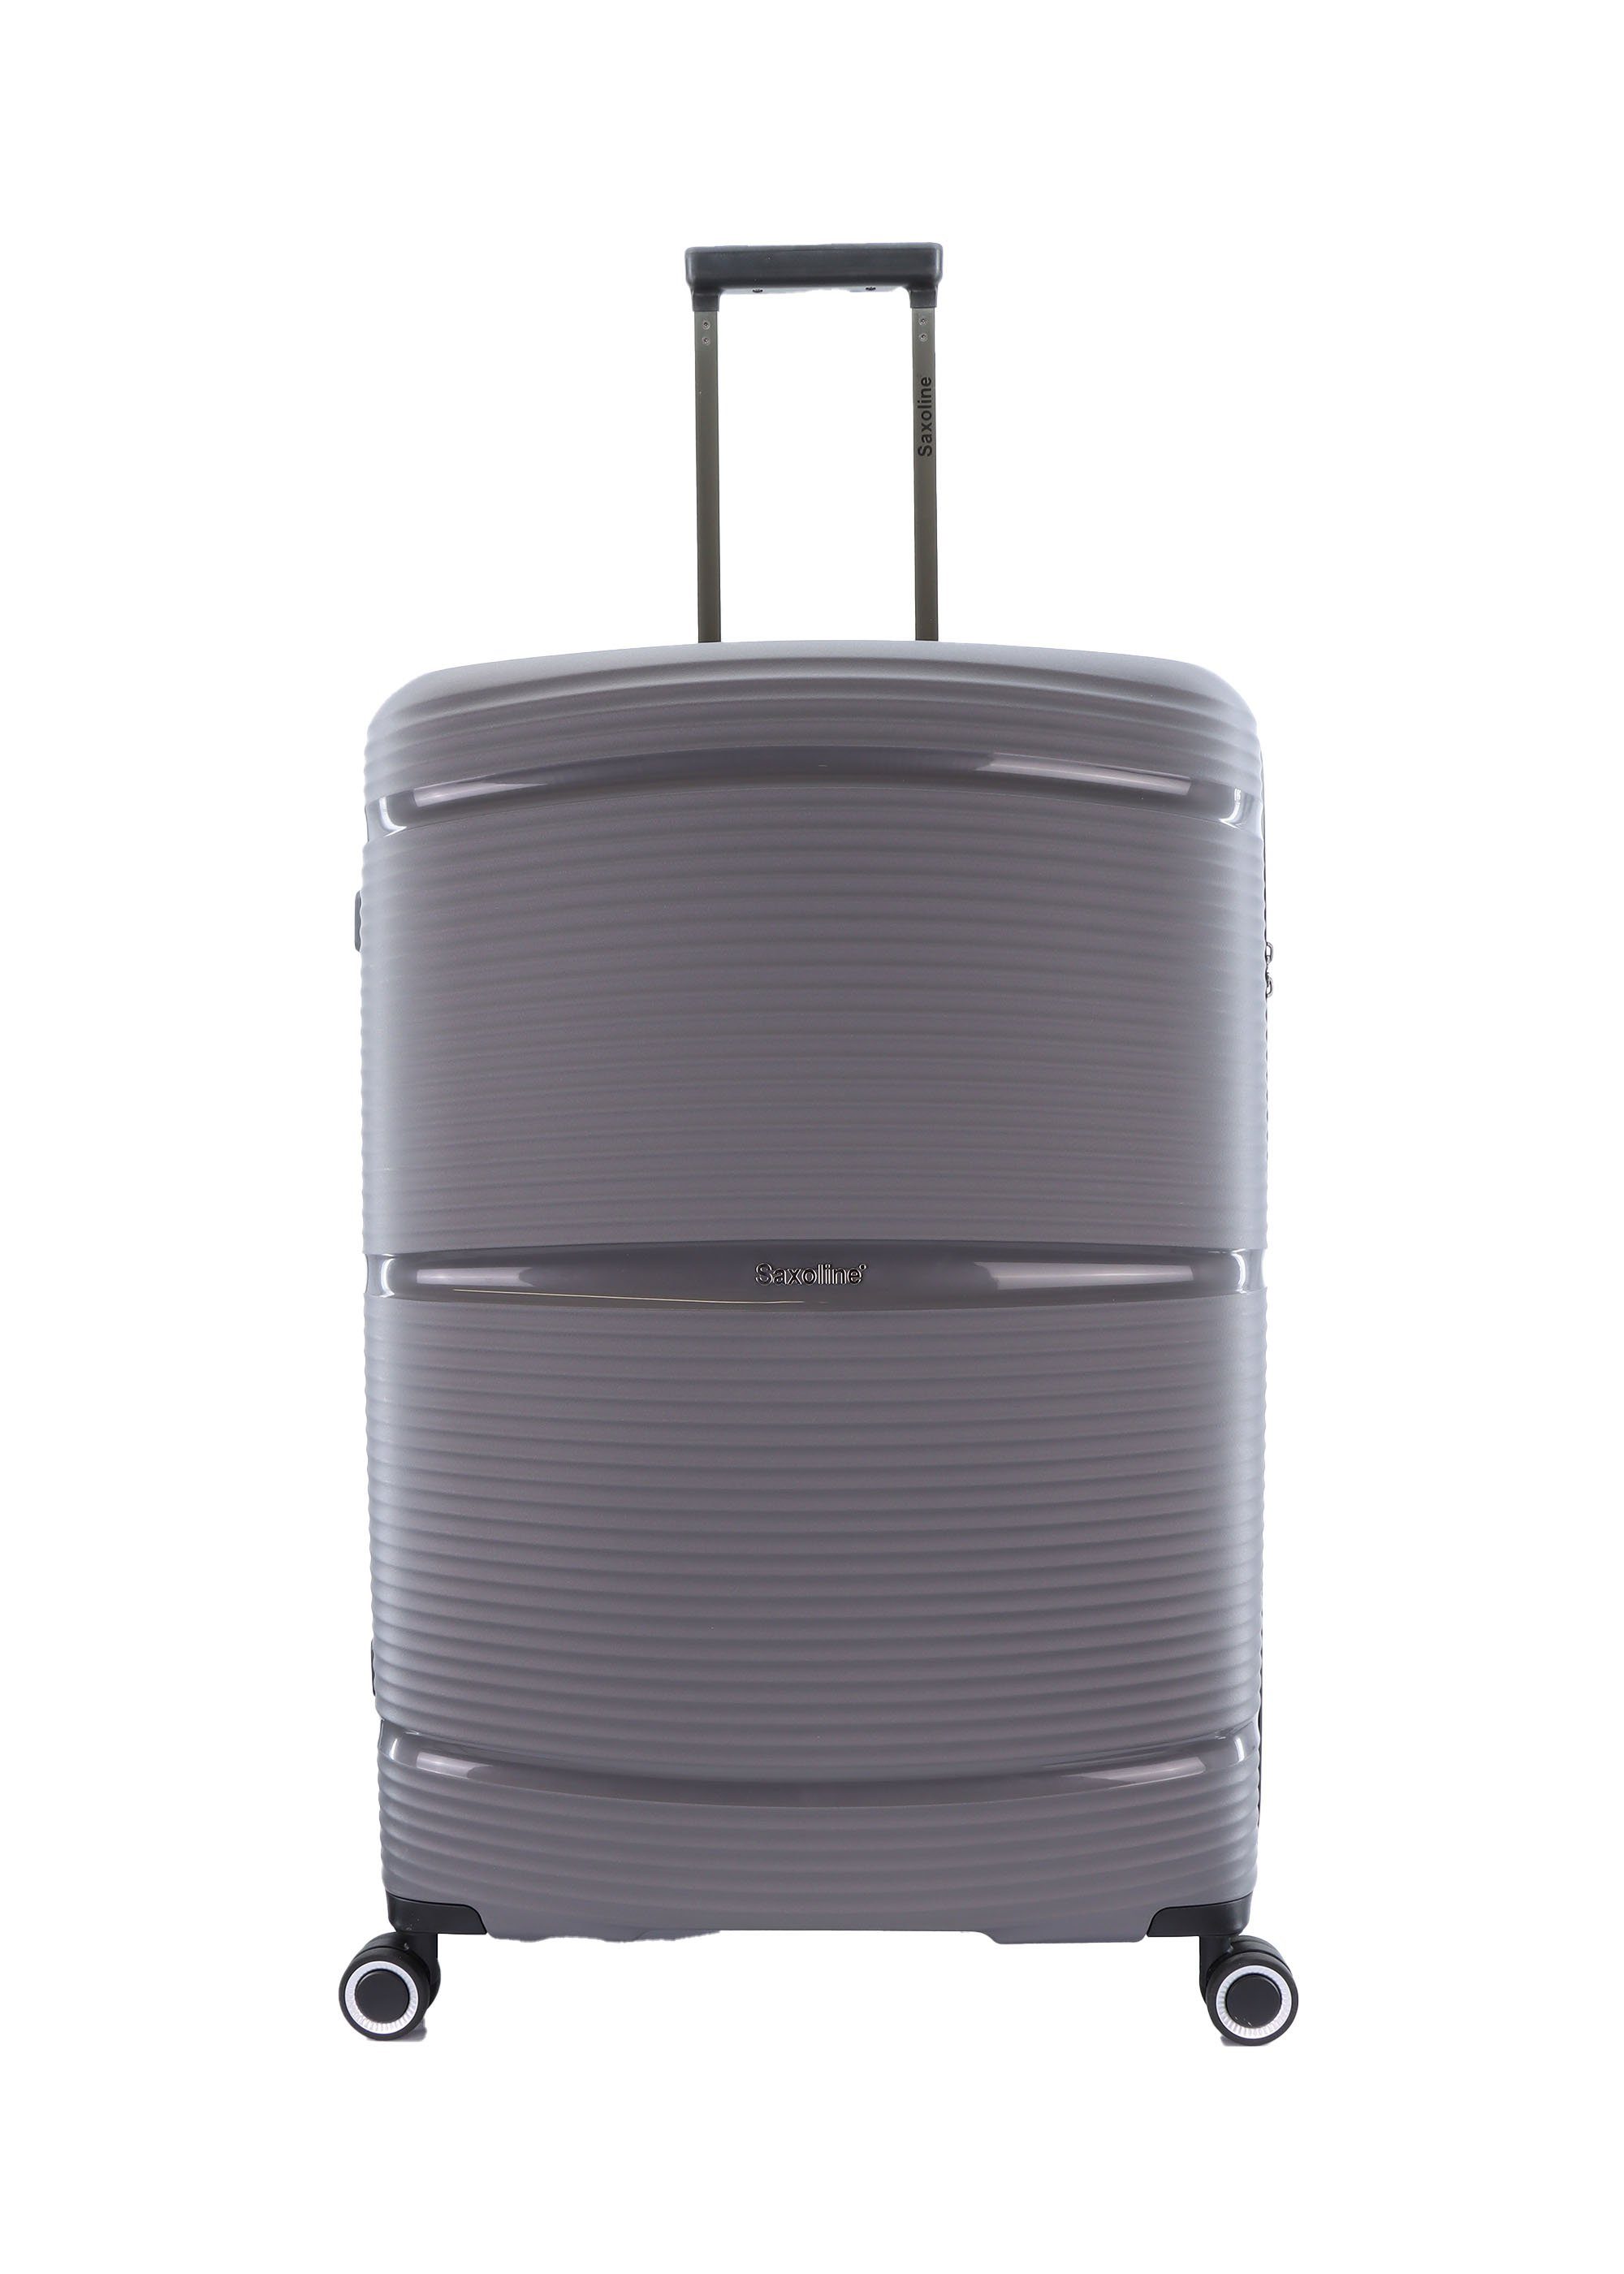 Packwand Koffer, mit U-förmige praktischem Saxoline® Innen-Vollfutter, und TSA-Zahlenschloss, Packbänder